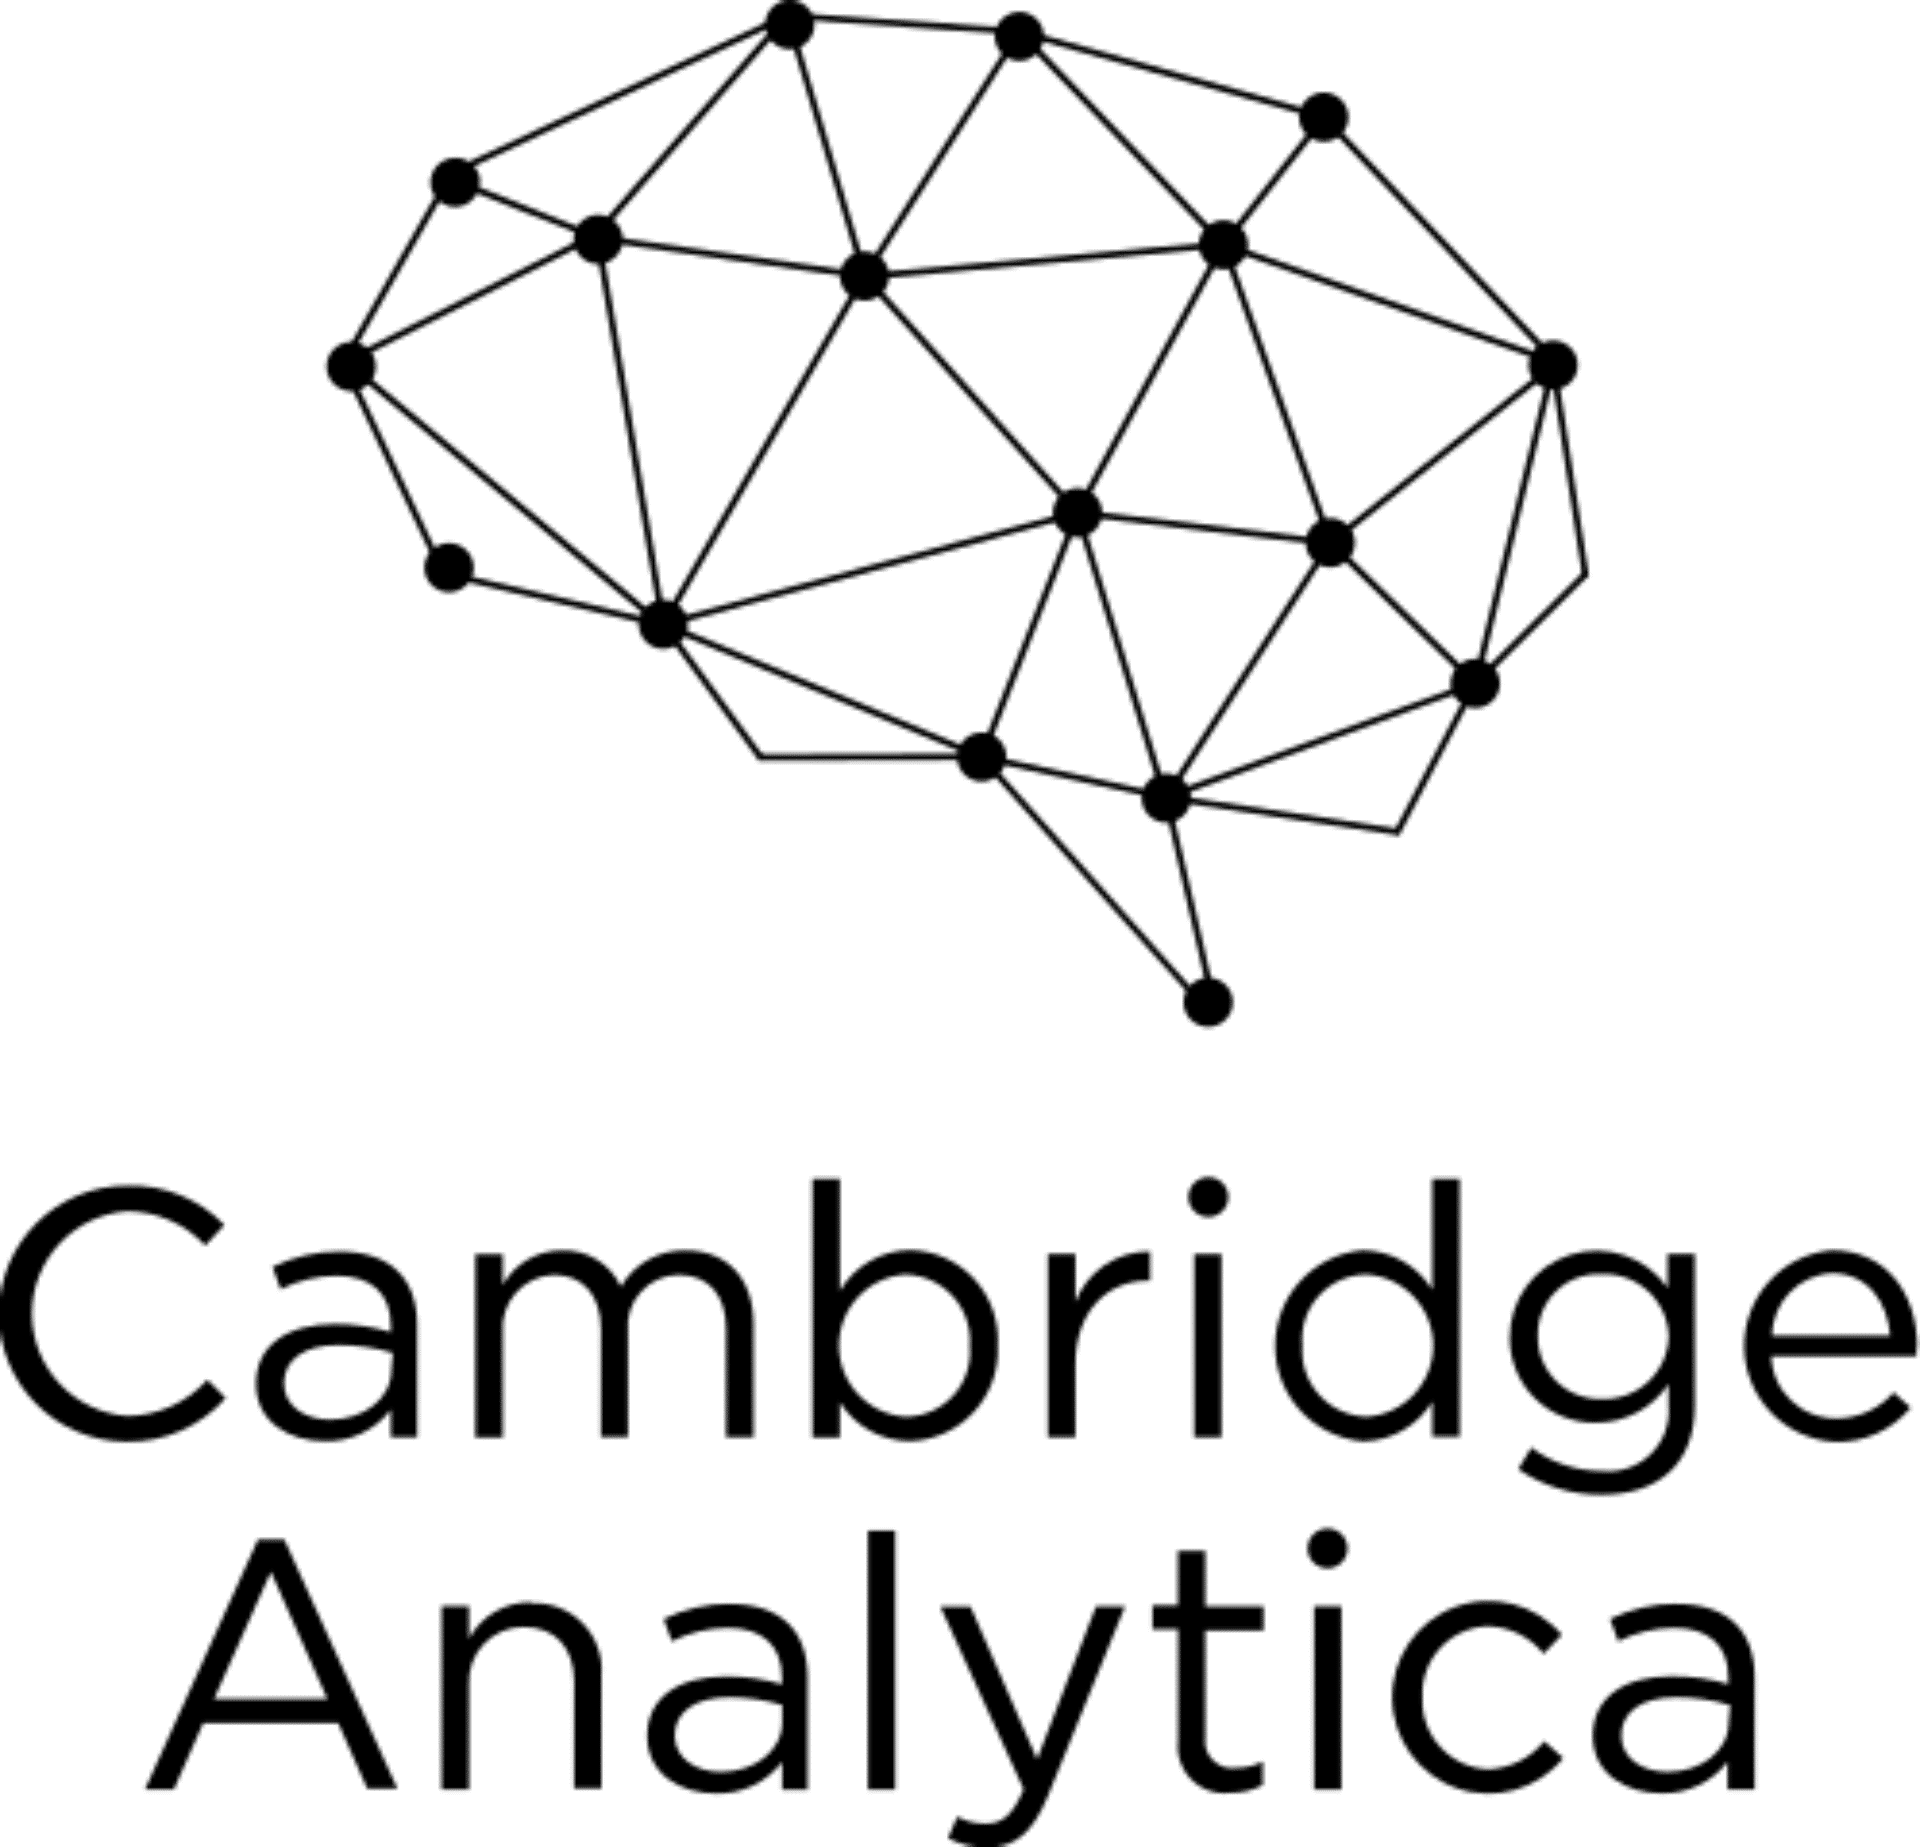 Cambridge Analytican logo.